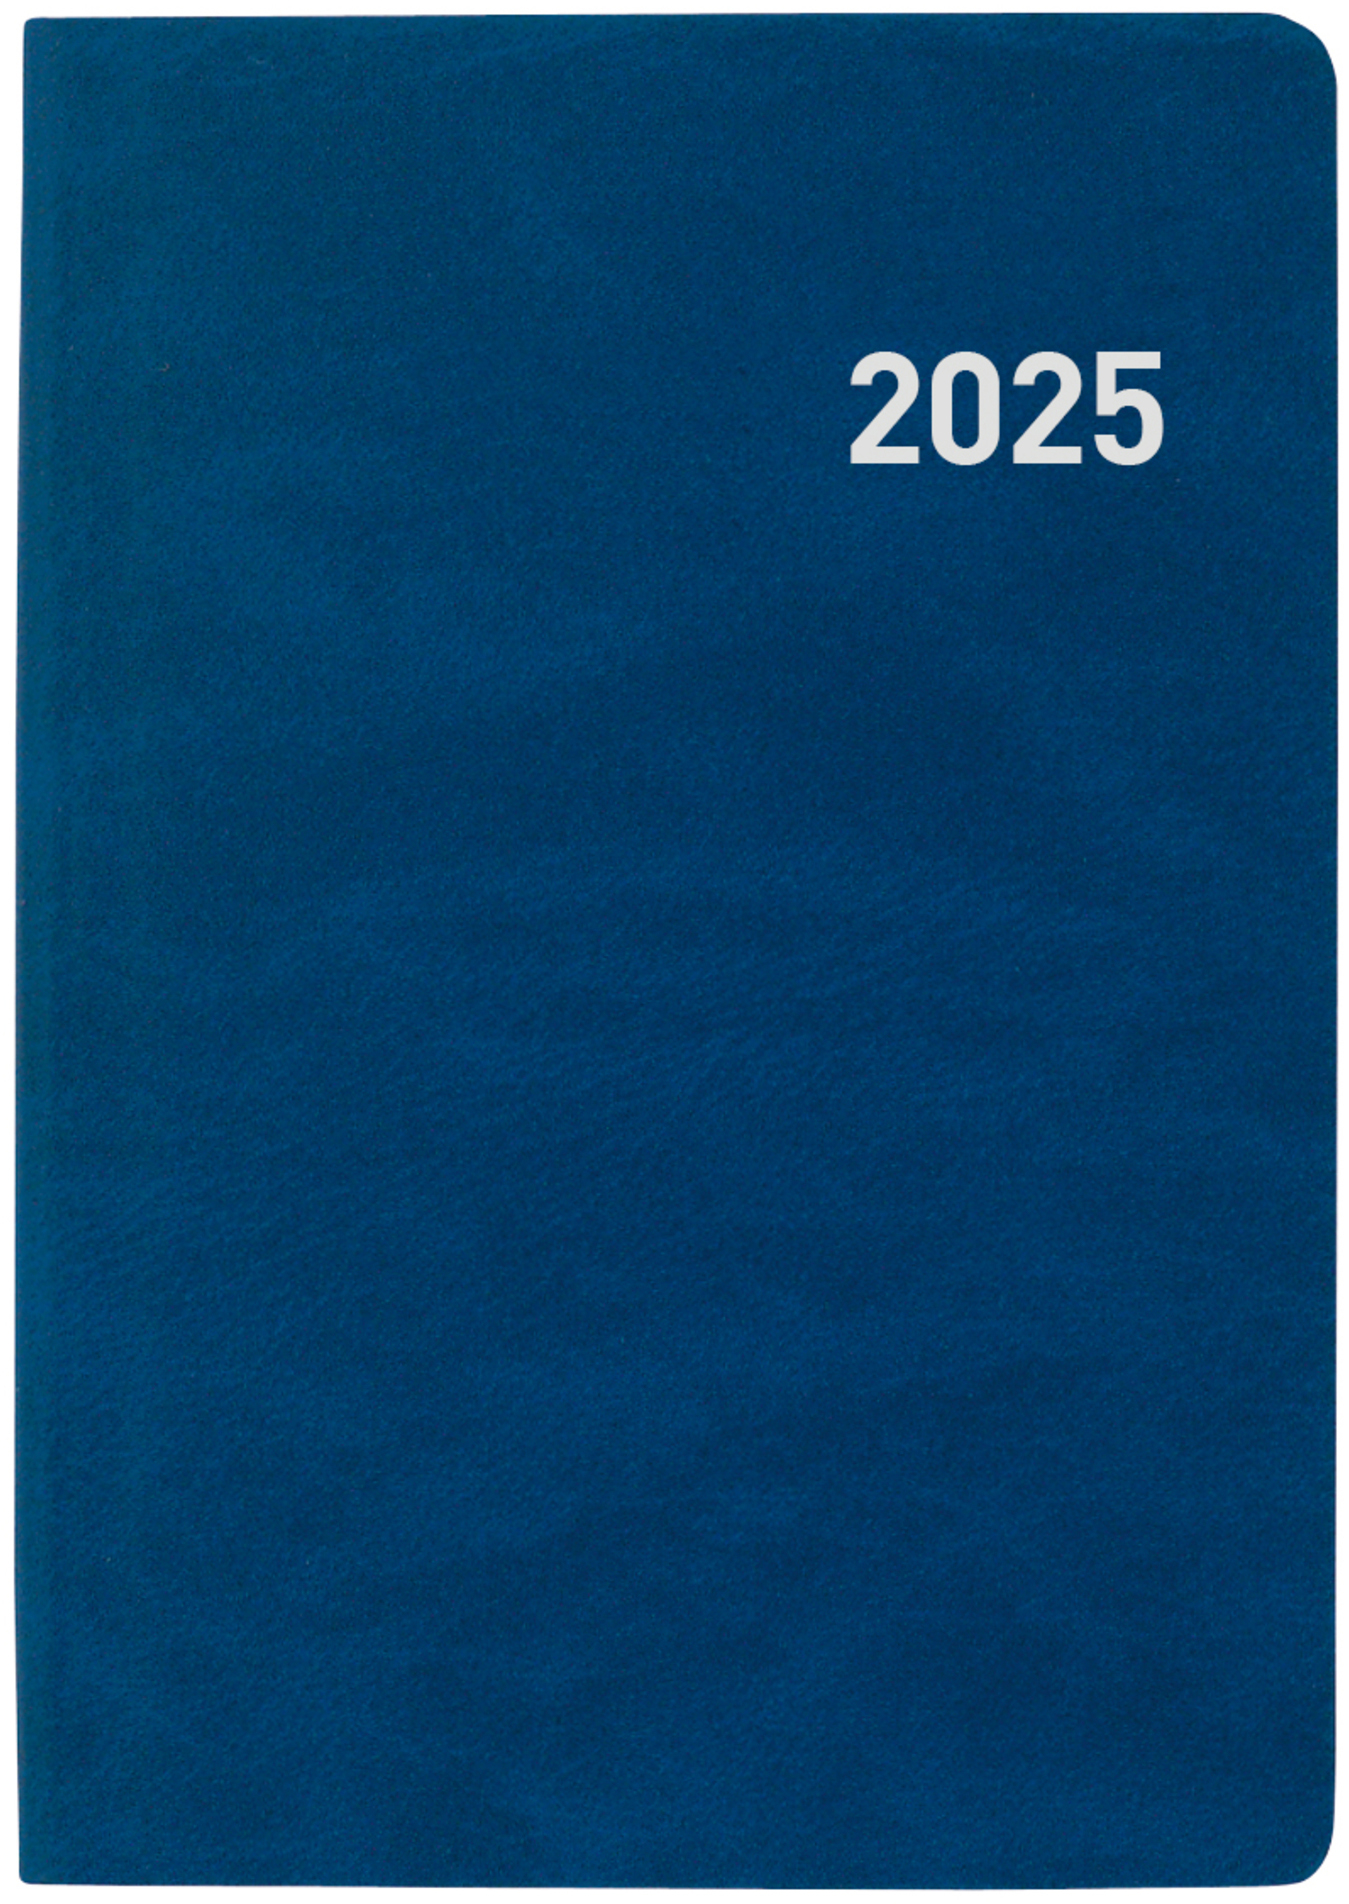 BIELLA Agenda Tell 2025 823201050025 2J/1P bleu ML 8.5x12.5cm